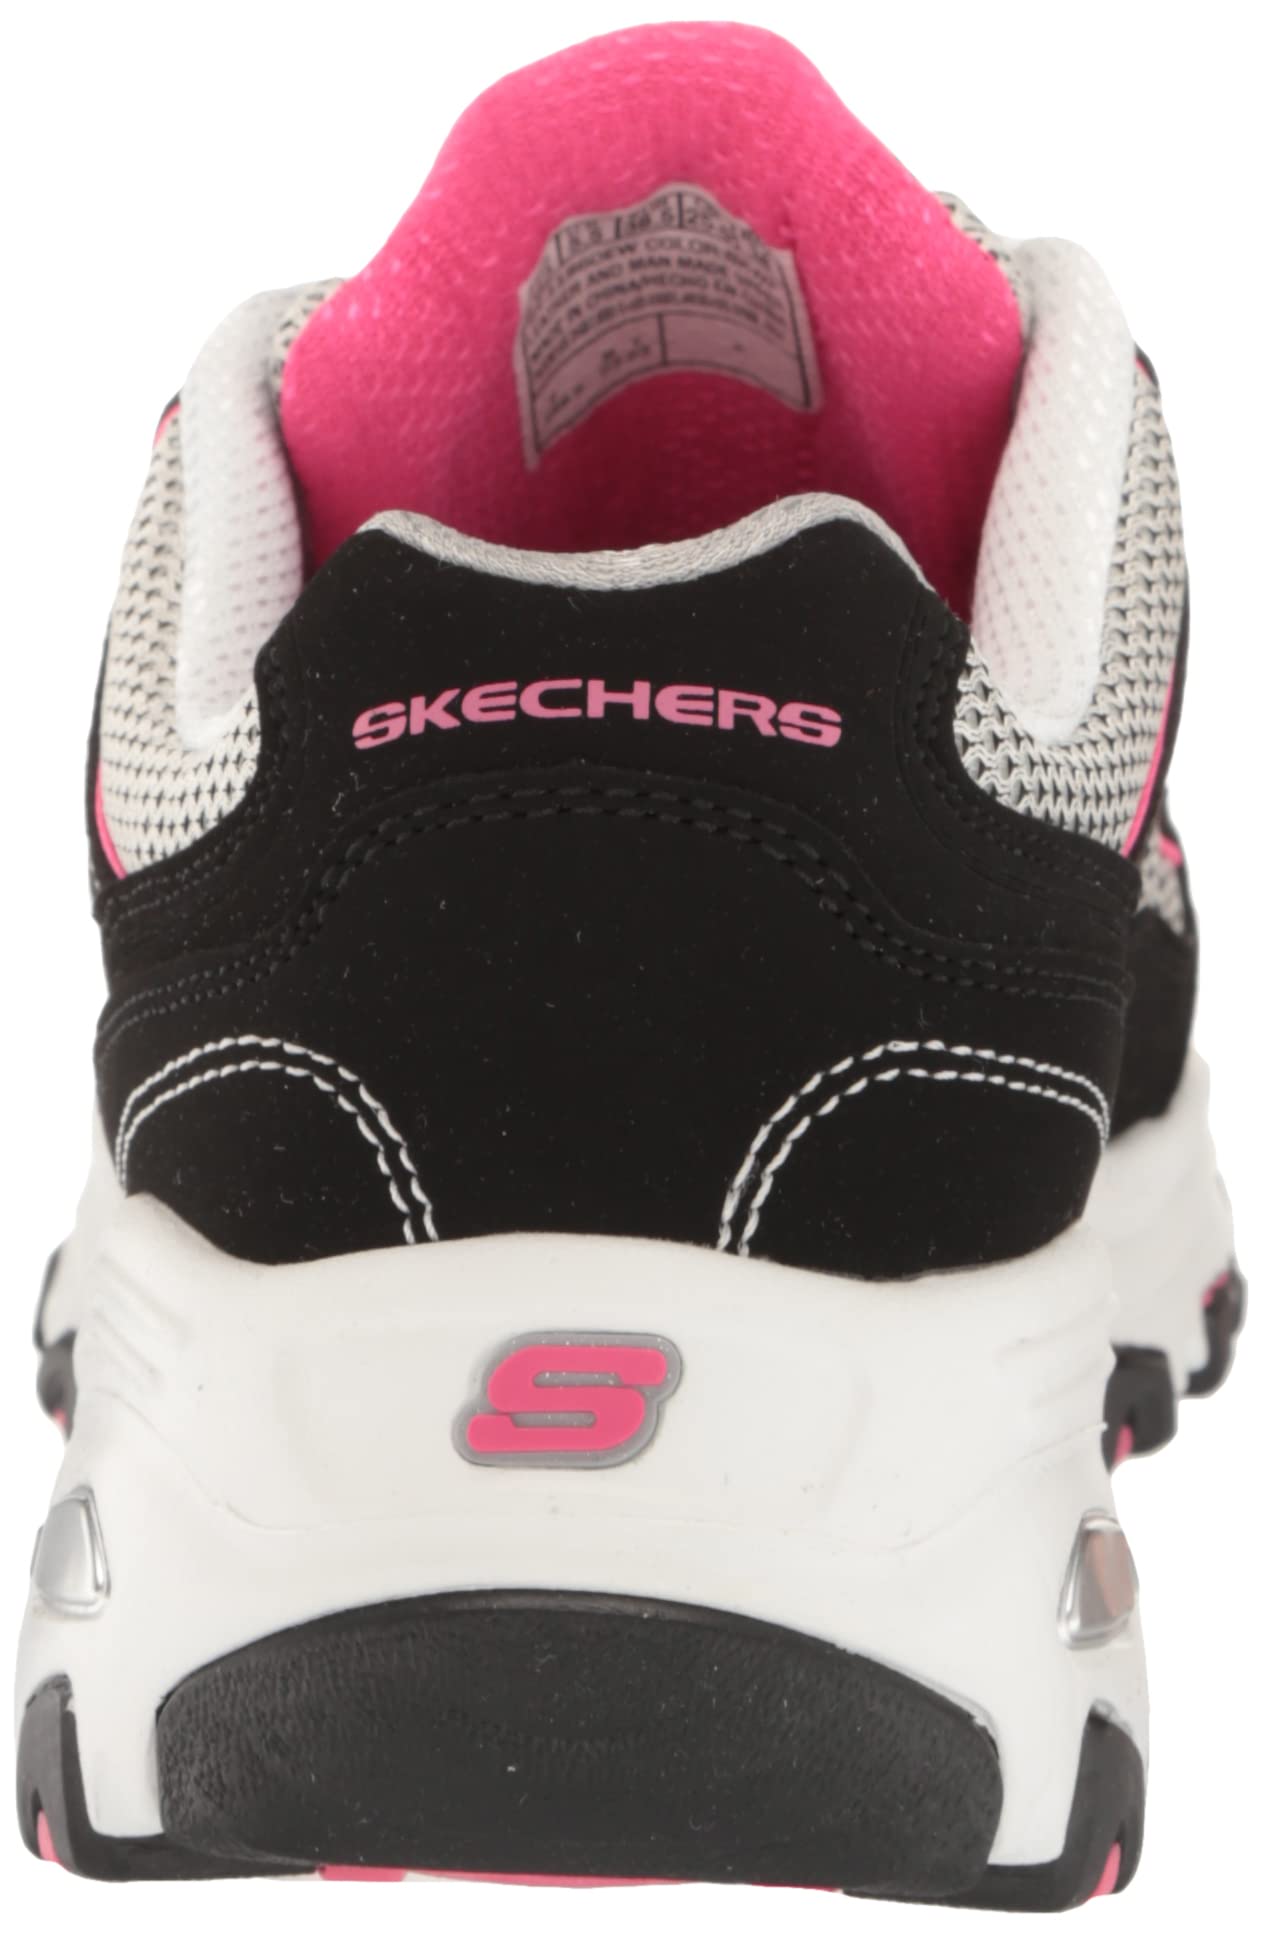 Skechers Women's D'Lites-Life Saver Memory Foam Lace-up Sneaker